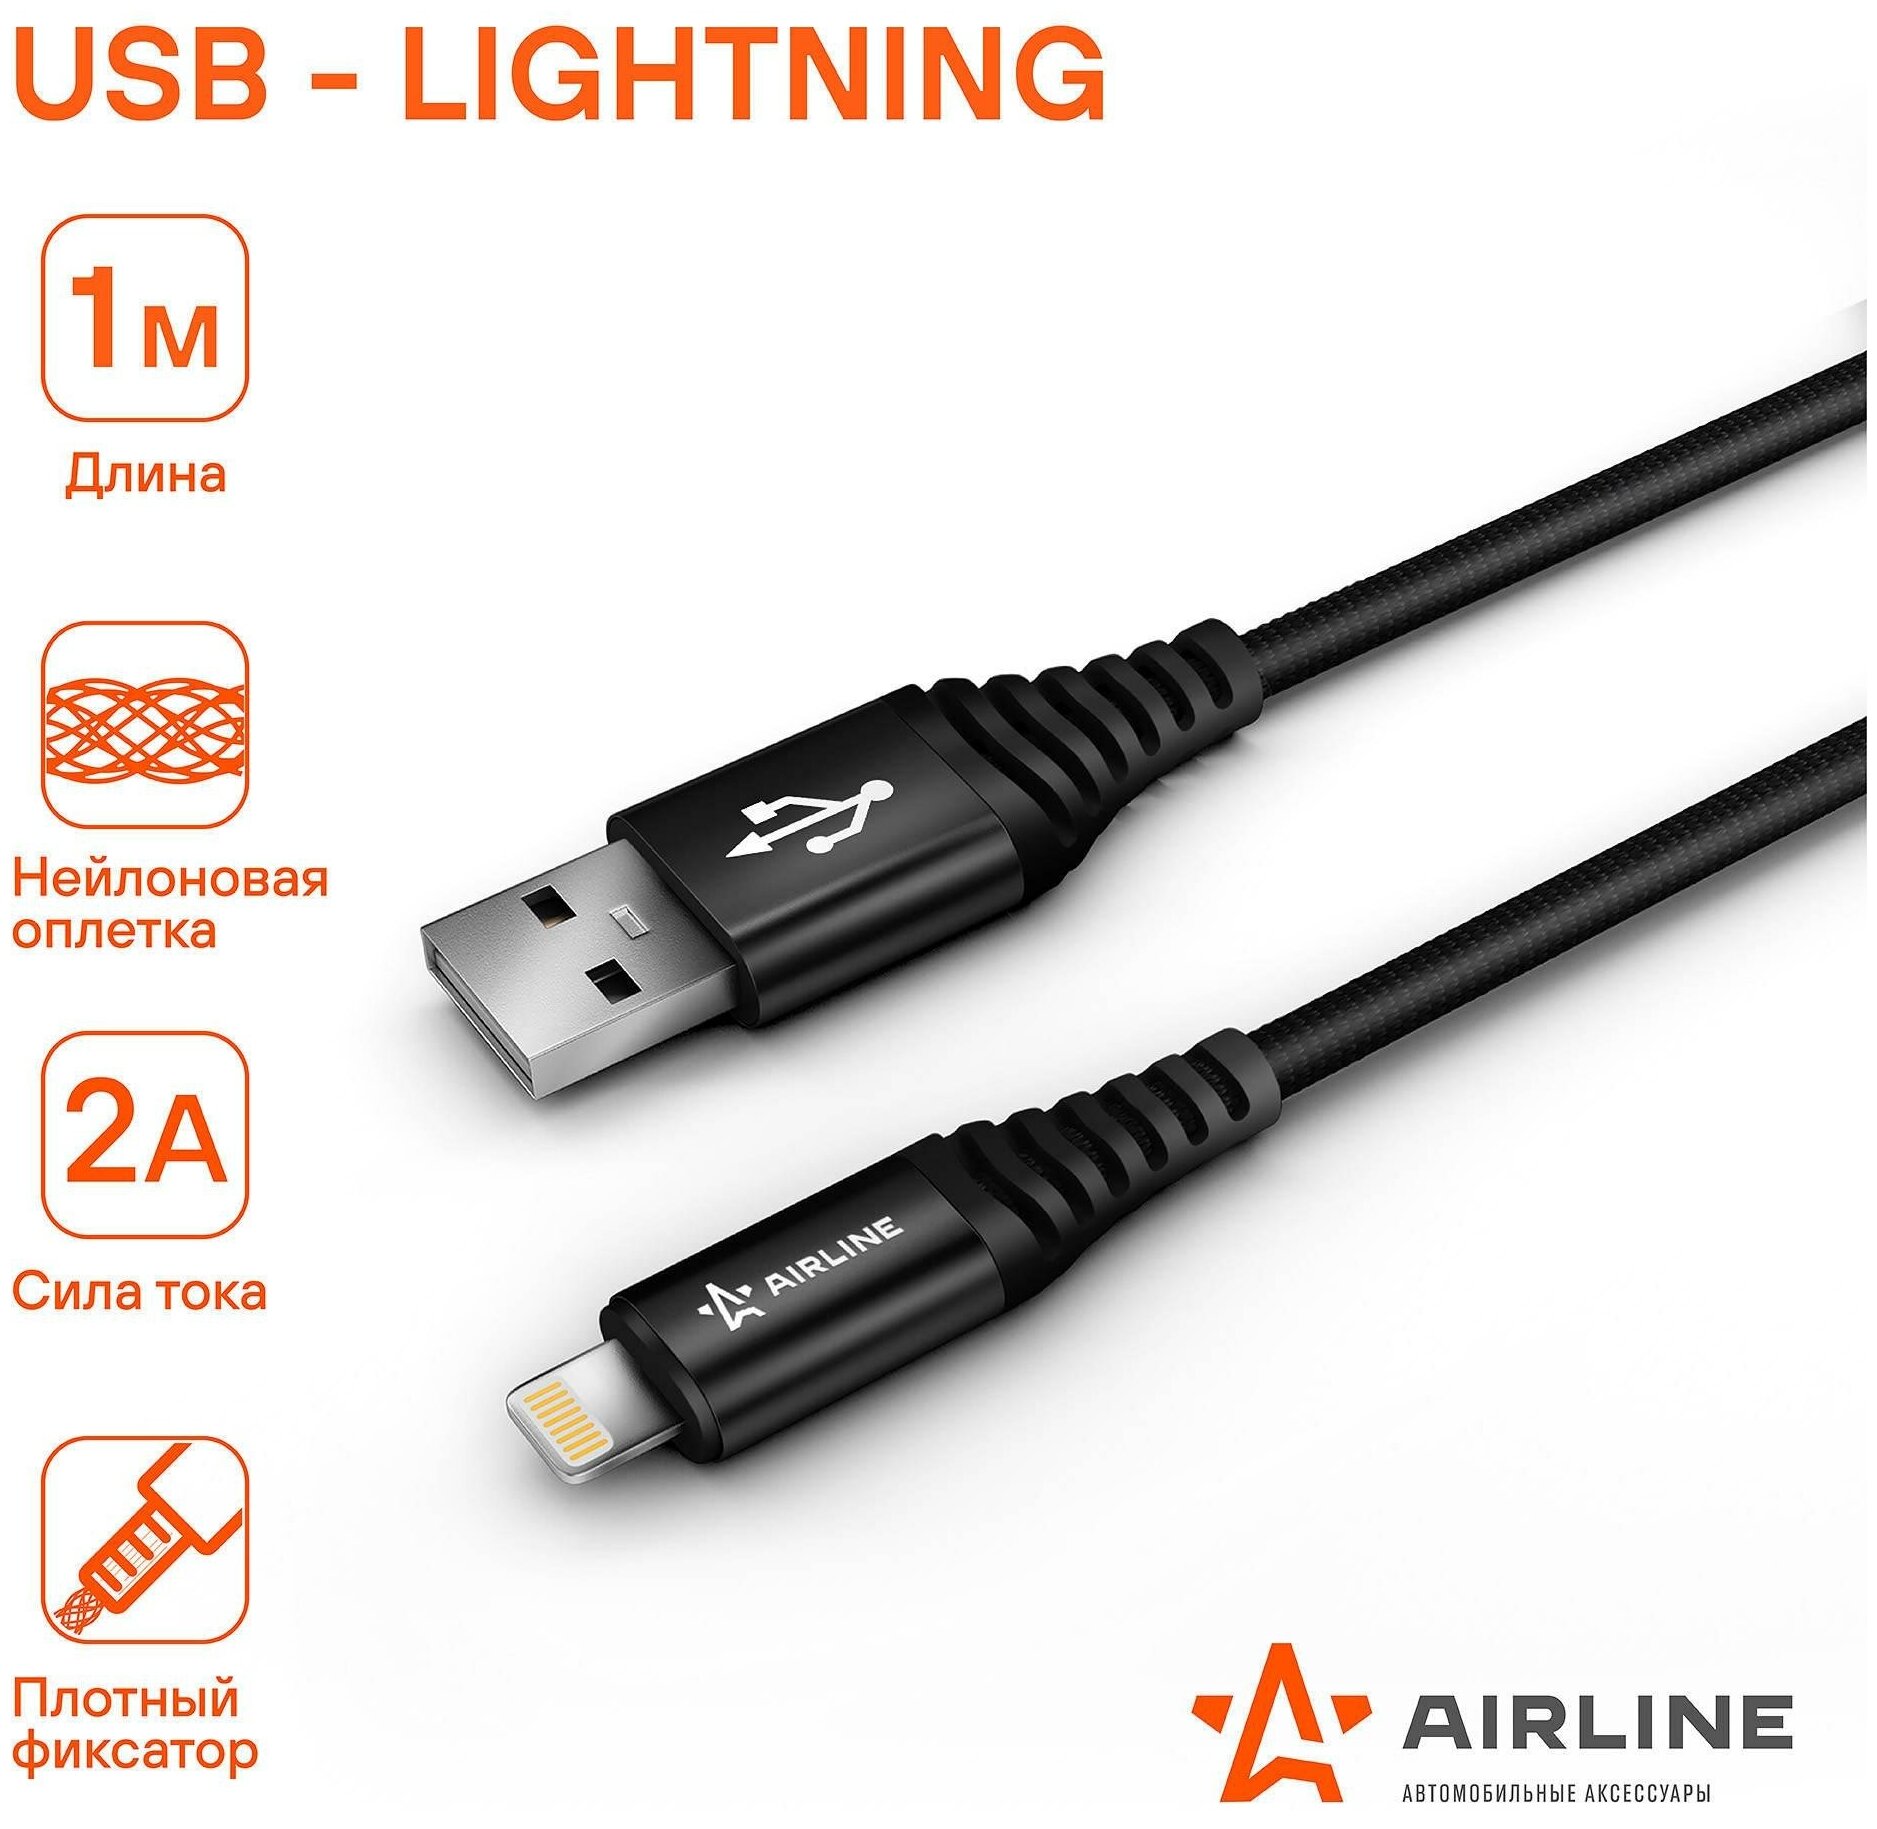 Кабель USB - Lightning (Iphone/IPad) 1м, черный нейлоновый AIRLINE